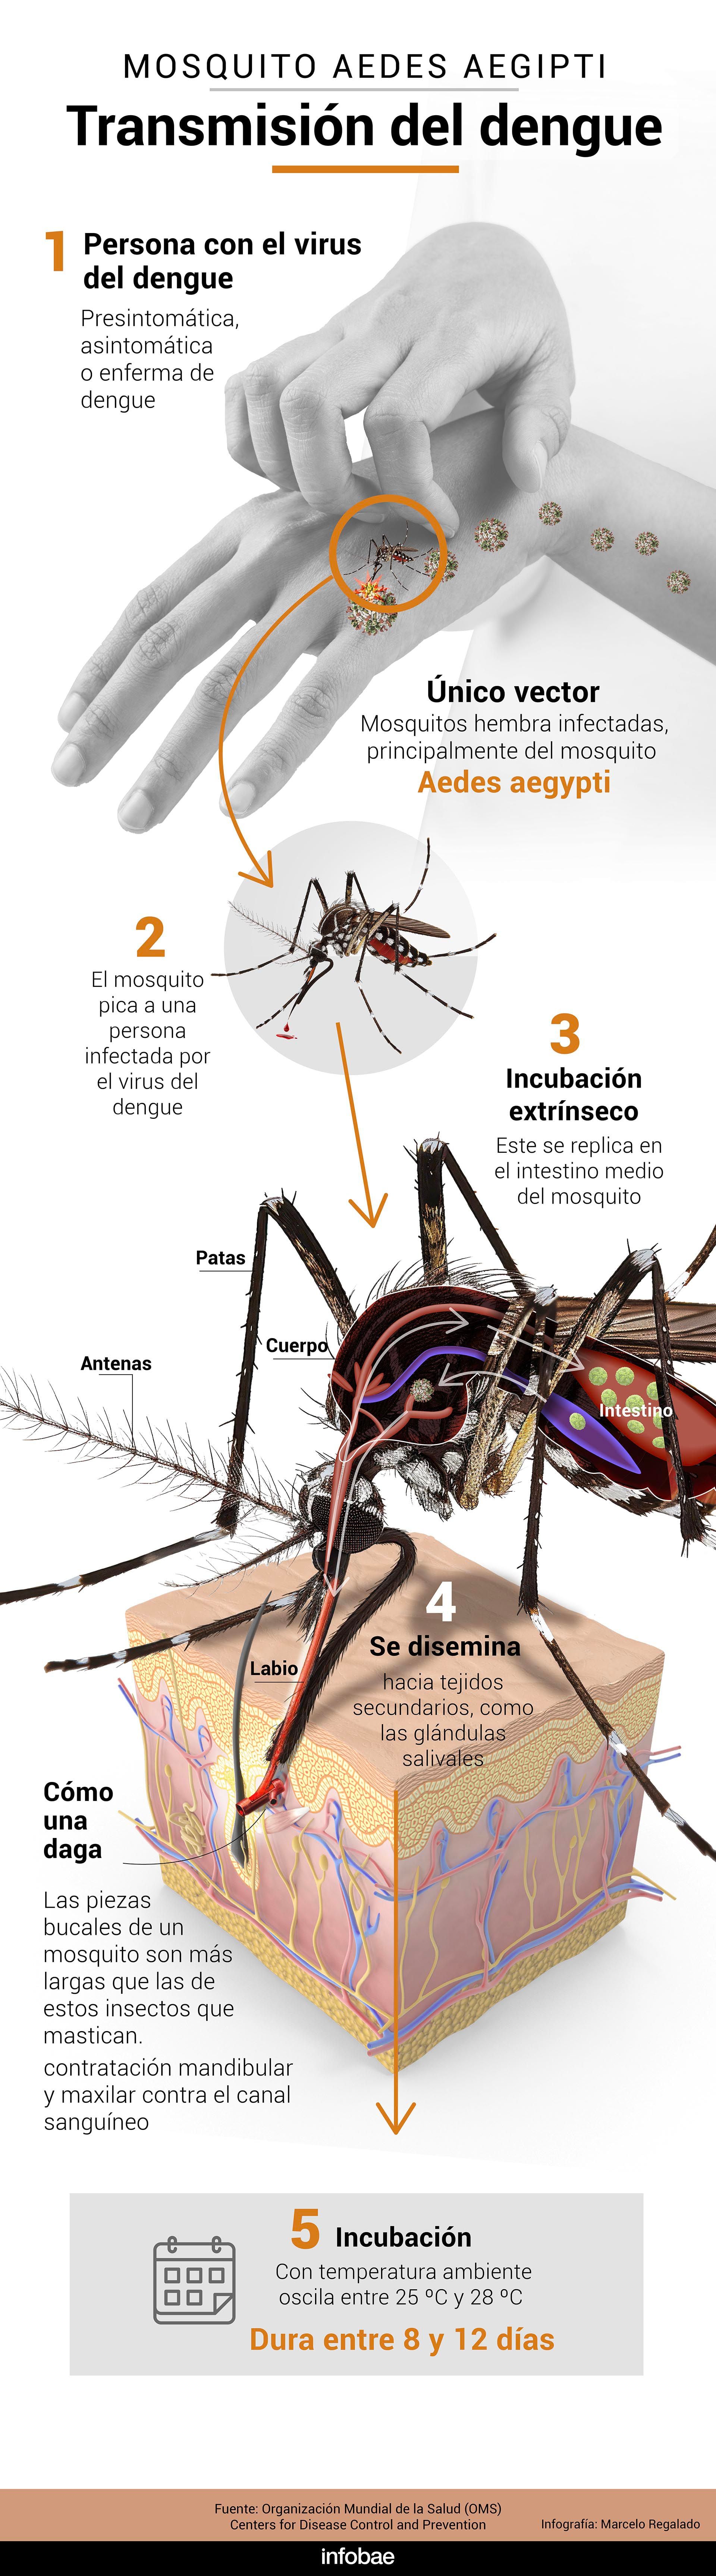 El hábitat del mosquito Aedes aegypti está cambiando, extendiéndose a nuevas áreas, incluidas altitudes y regiones previamente no afectadas (infografía Marcelo Regalado)
